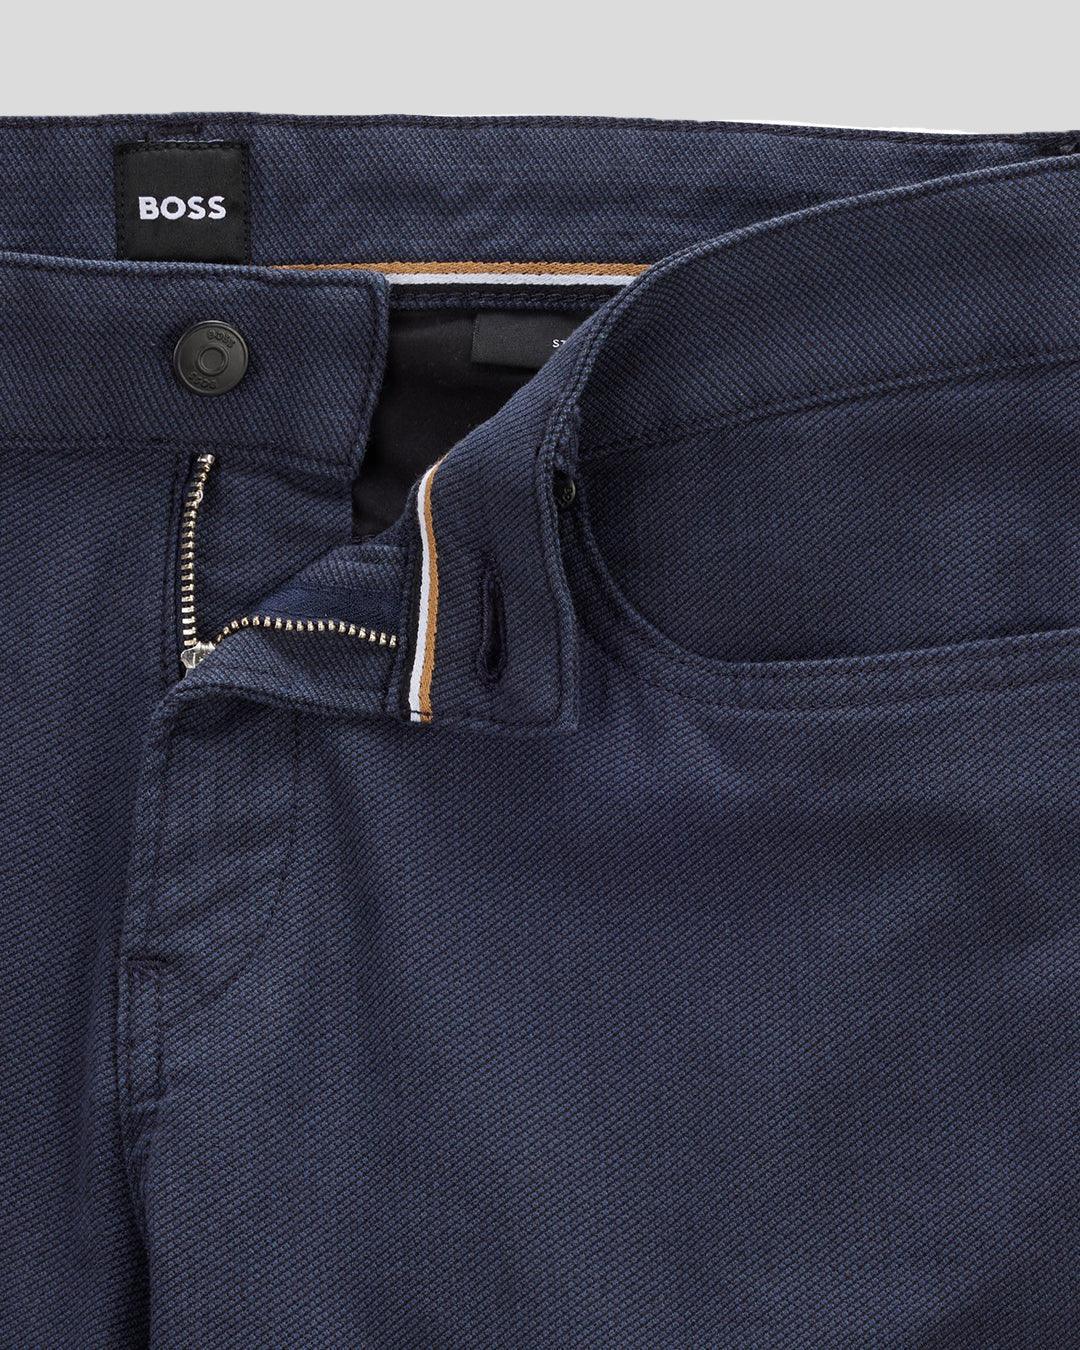 Jeans Casual Boss Slim Fit En Micro Estructuras Con Strech Navy - tiendadicons.com